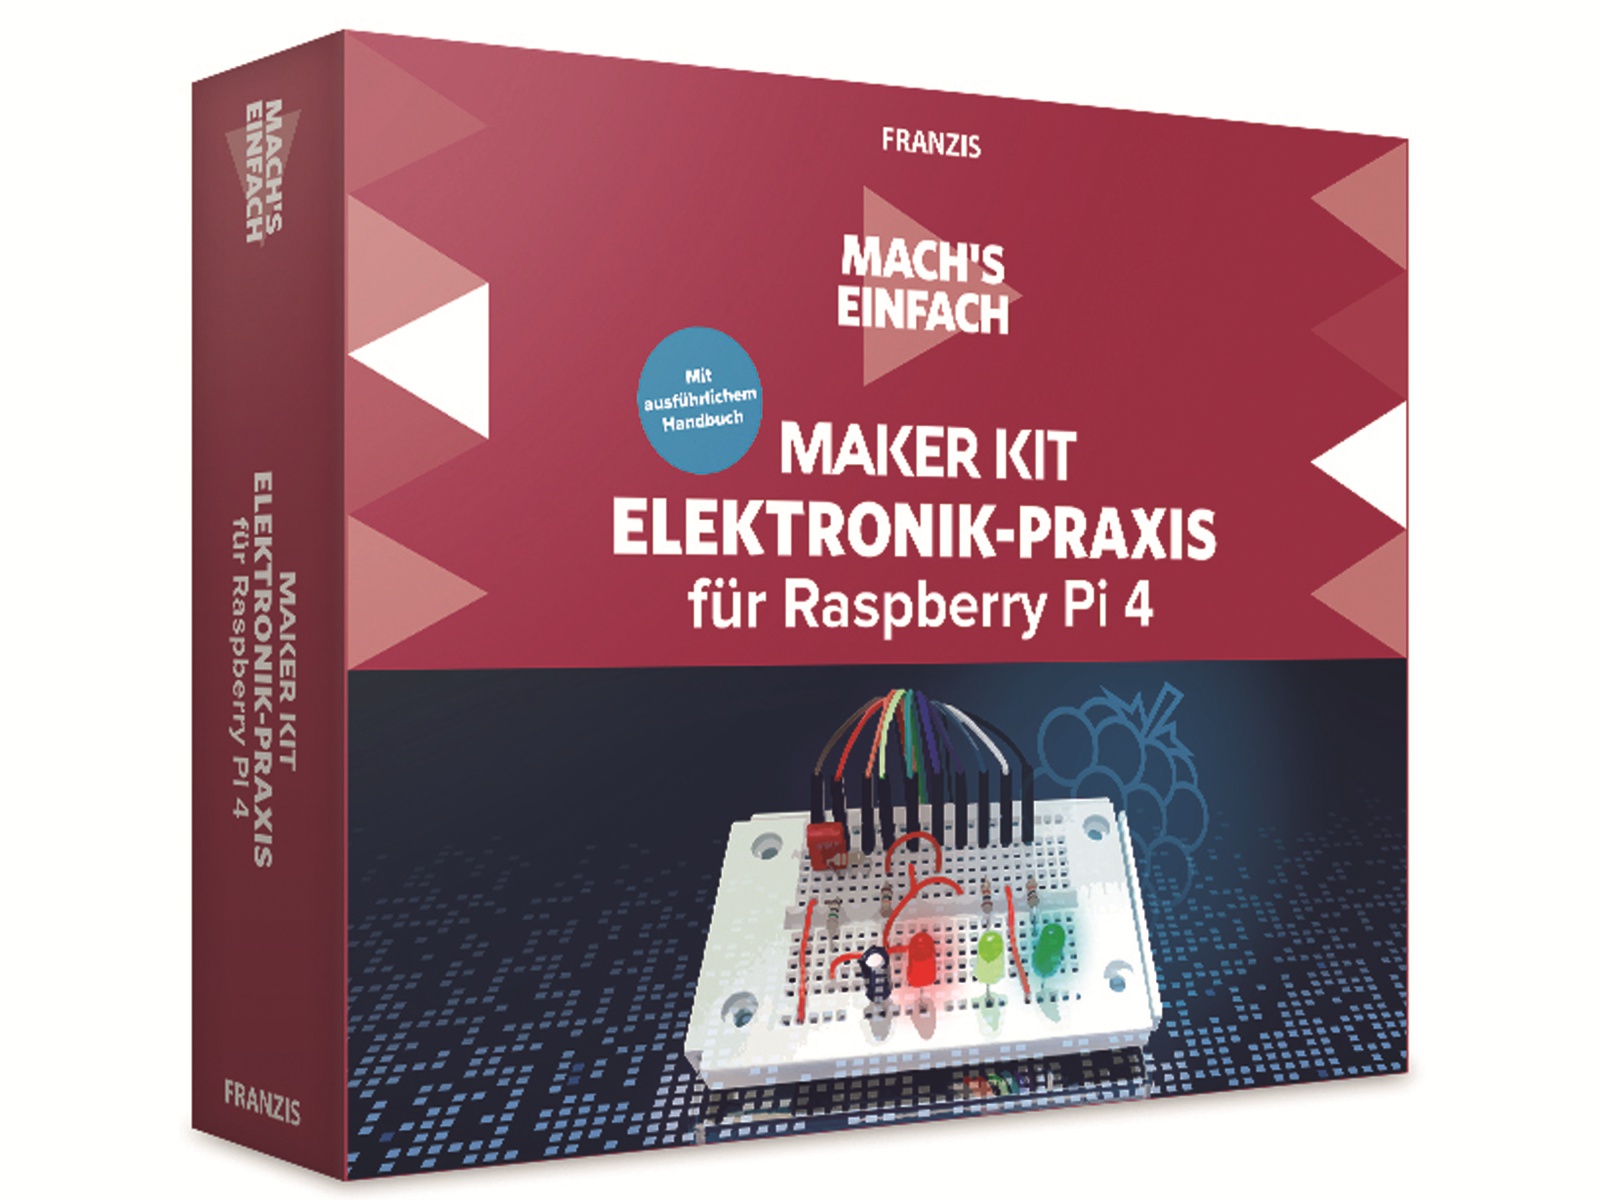 Franzis Maker Kit, 67143, für Raspberry Pi 4